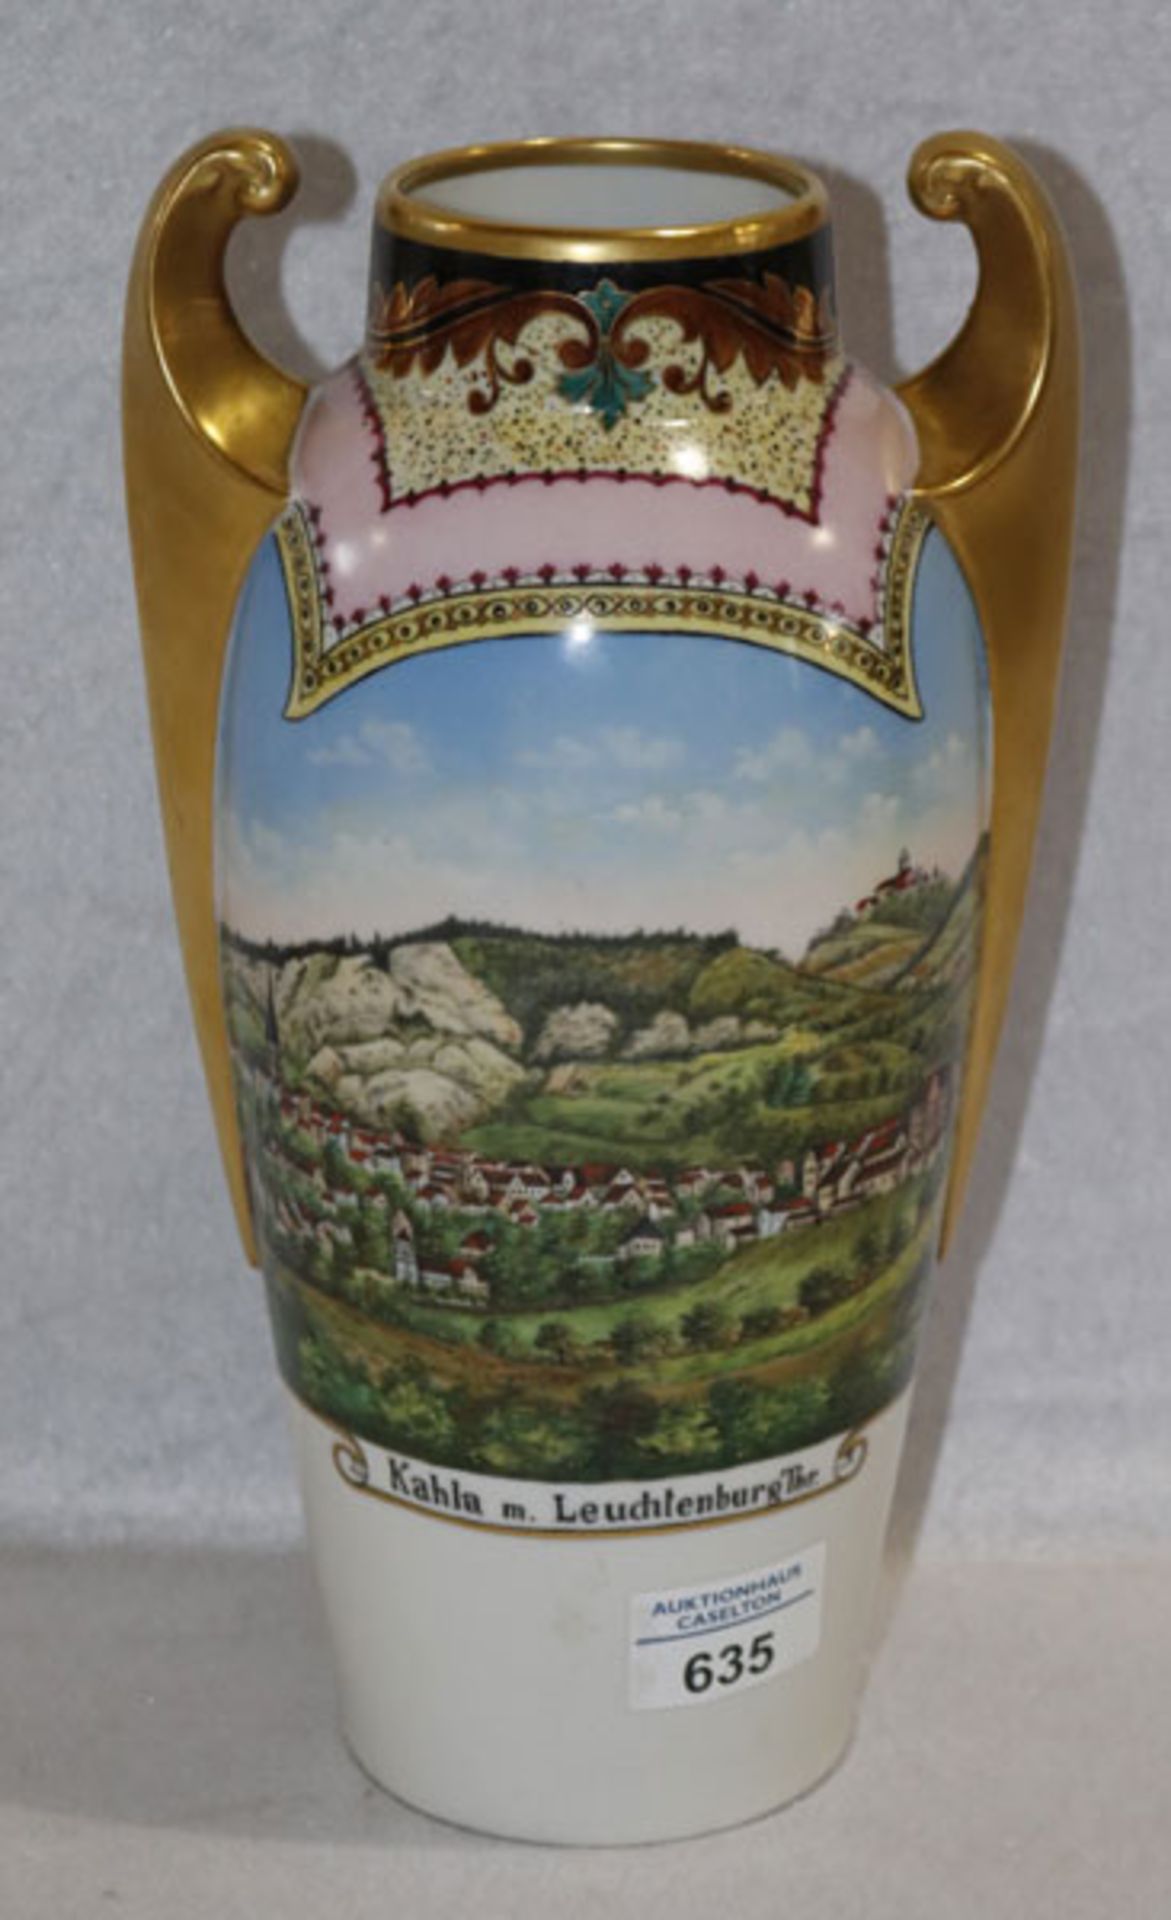 Porzellan Vase mit Bildnis 'Kahla m. Leuchtenburg Thr.', rückseitig mit Widmung, H 29 cm, D 15 cm,